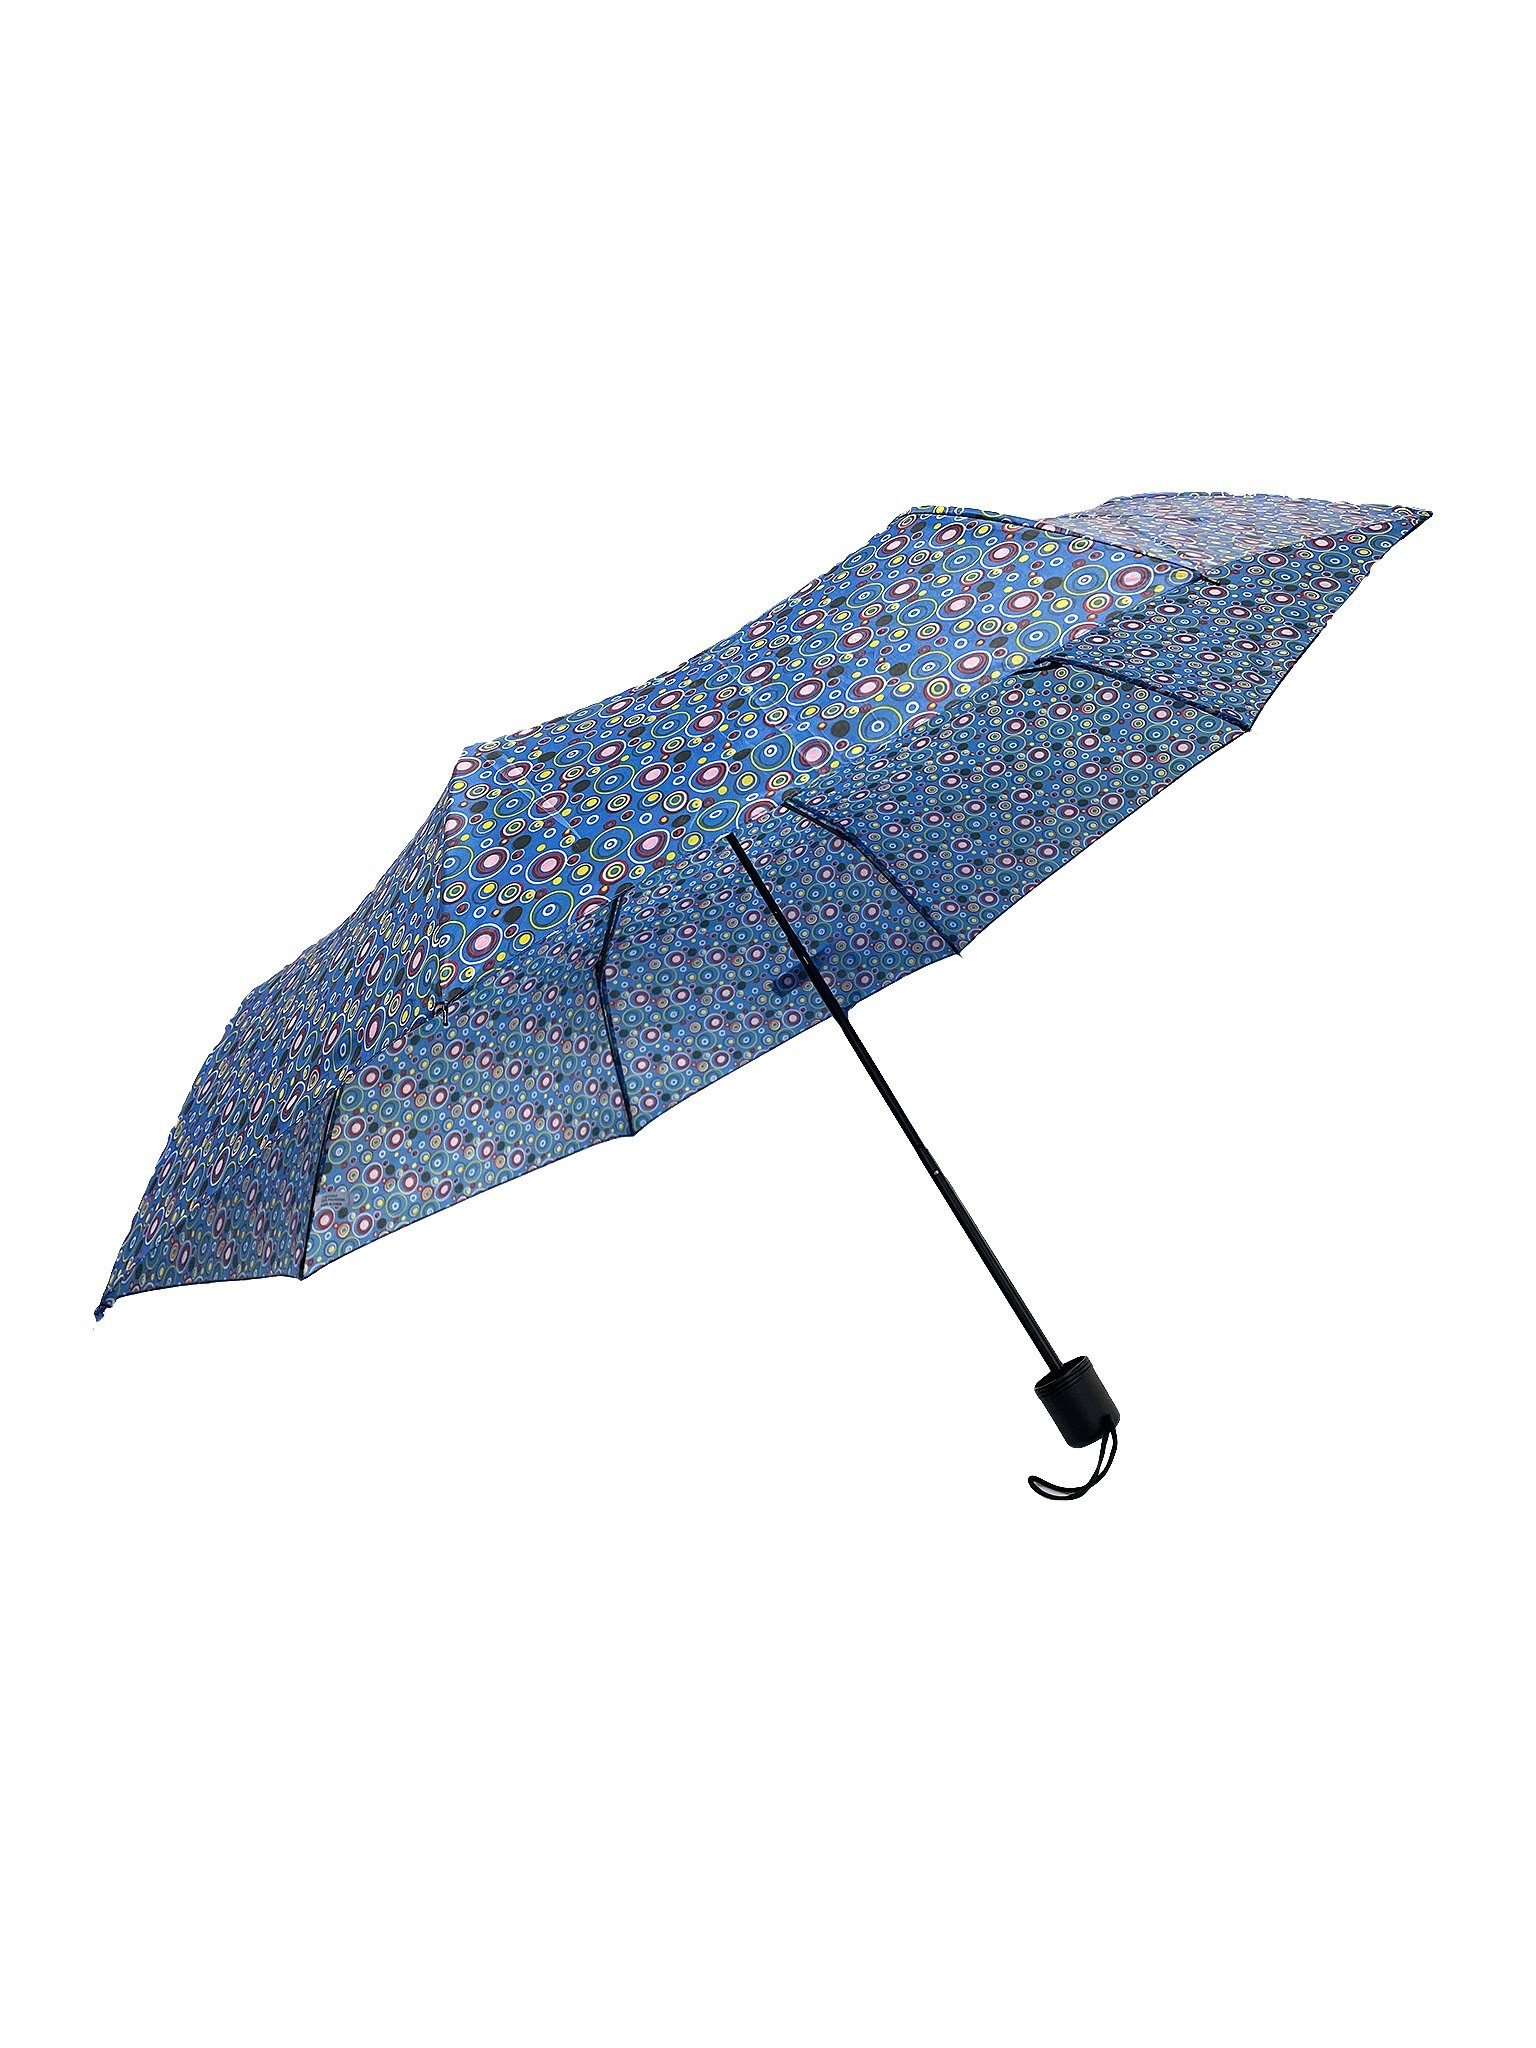 6746 Kleiner Regenschirm Gemustert in Taschenschirm, Paris Blau-Grün ANELY Taschenregenschirm